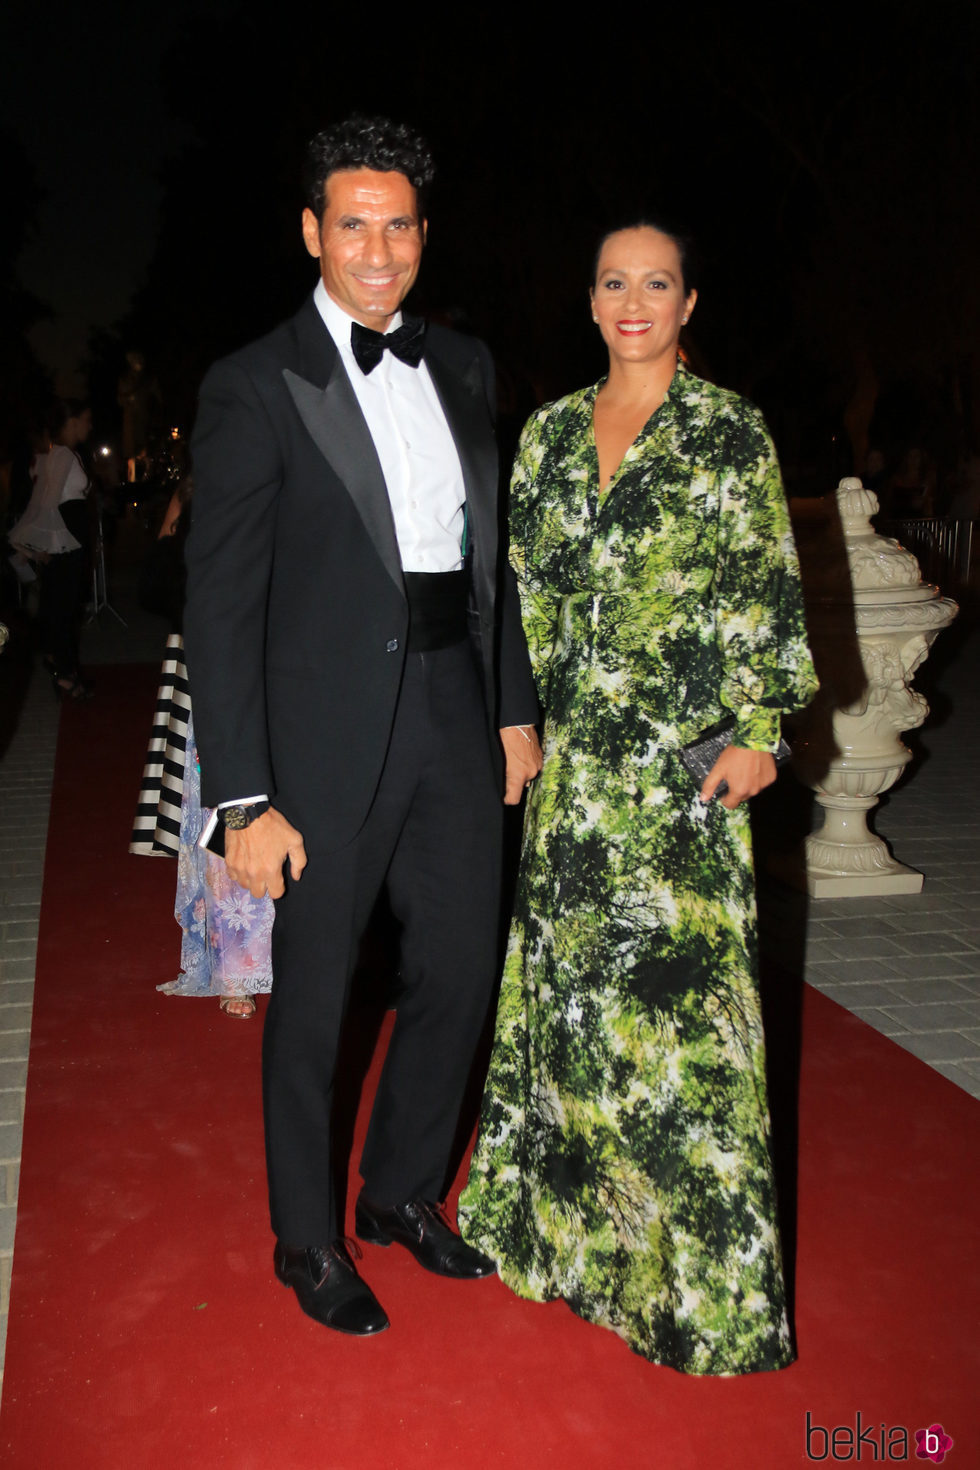 Óscar Higares y su mujer Sandra Álvarez durante la X Edicion de los Premios Escaparate en Sevilla.